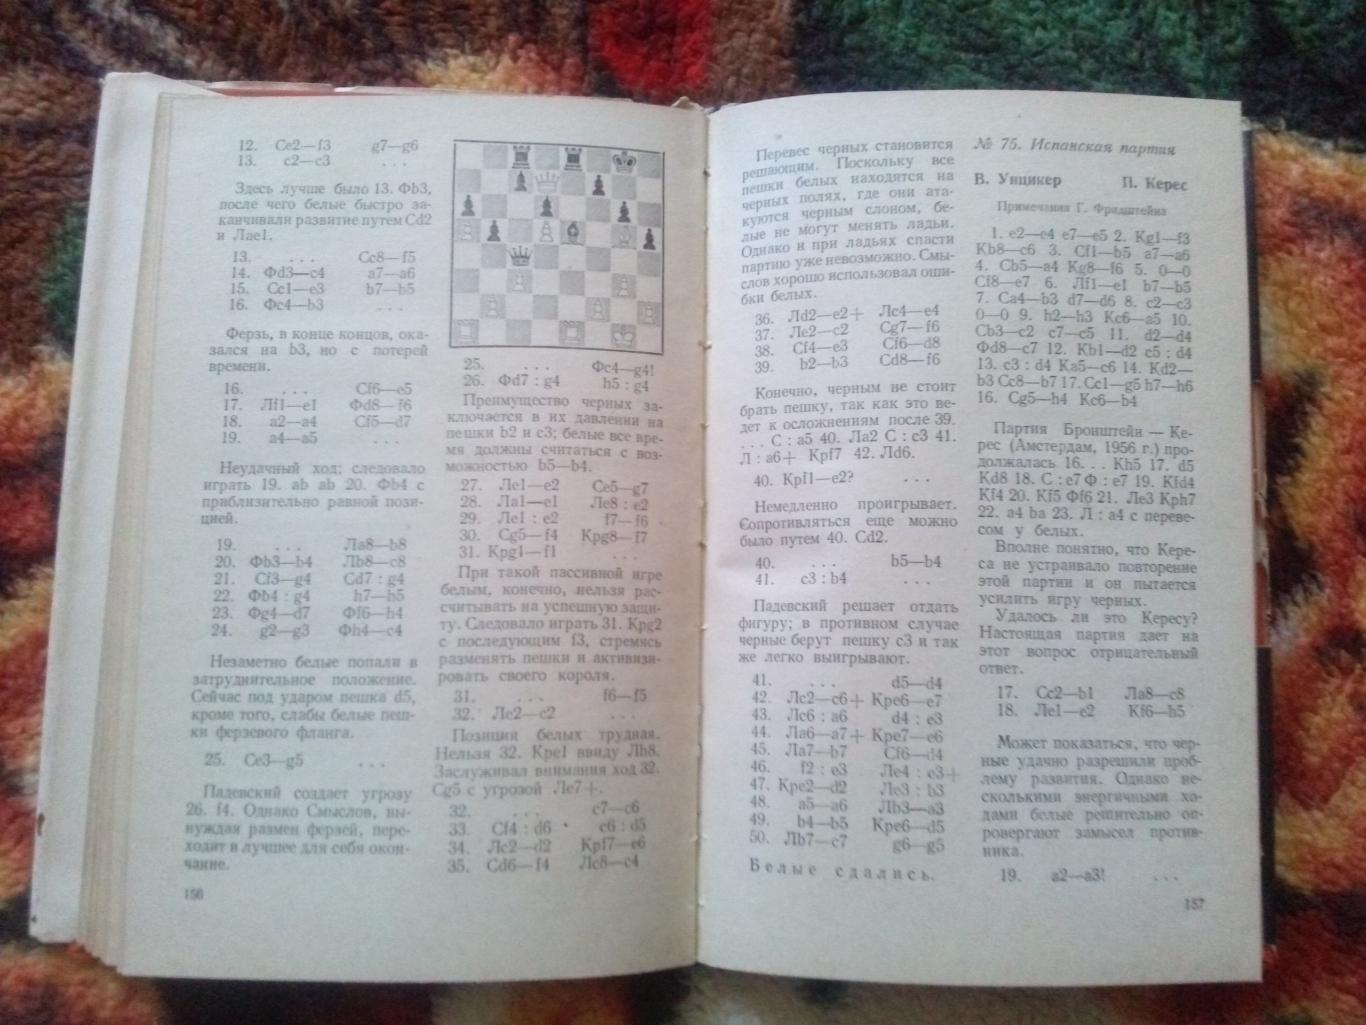 Международный турнир памяти Алехина 1956 г. ФиС 1958 г. (Шахматы , спорт) 7